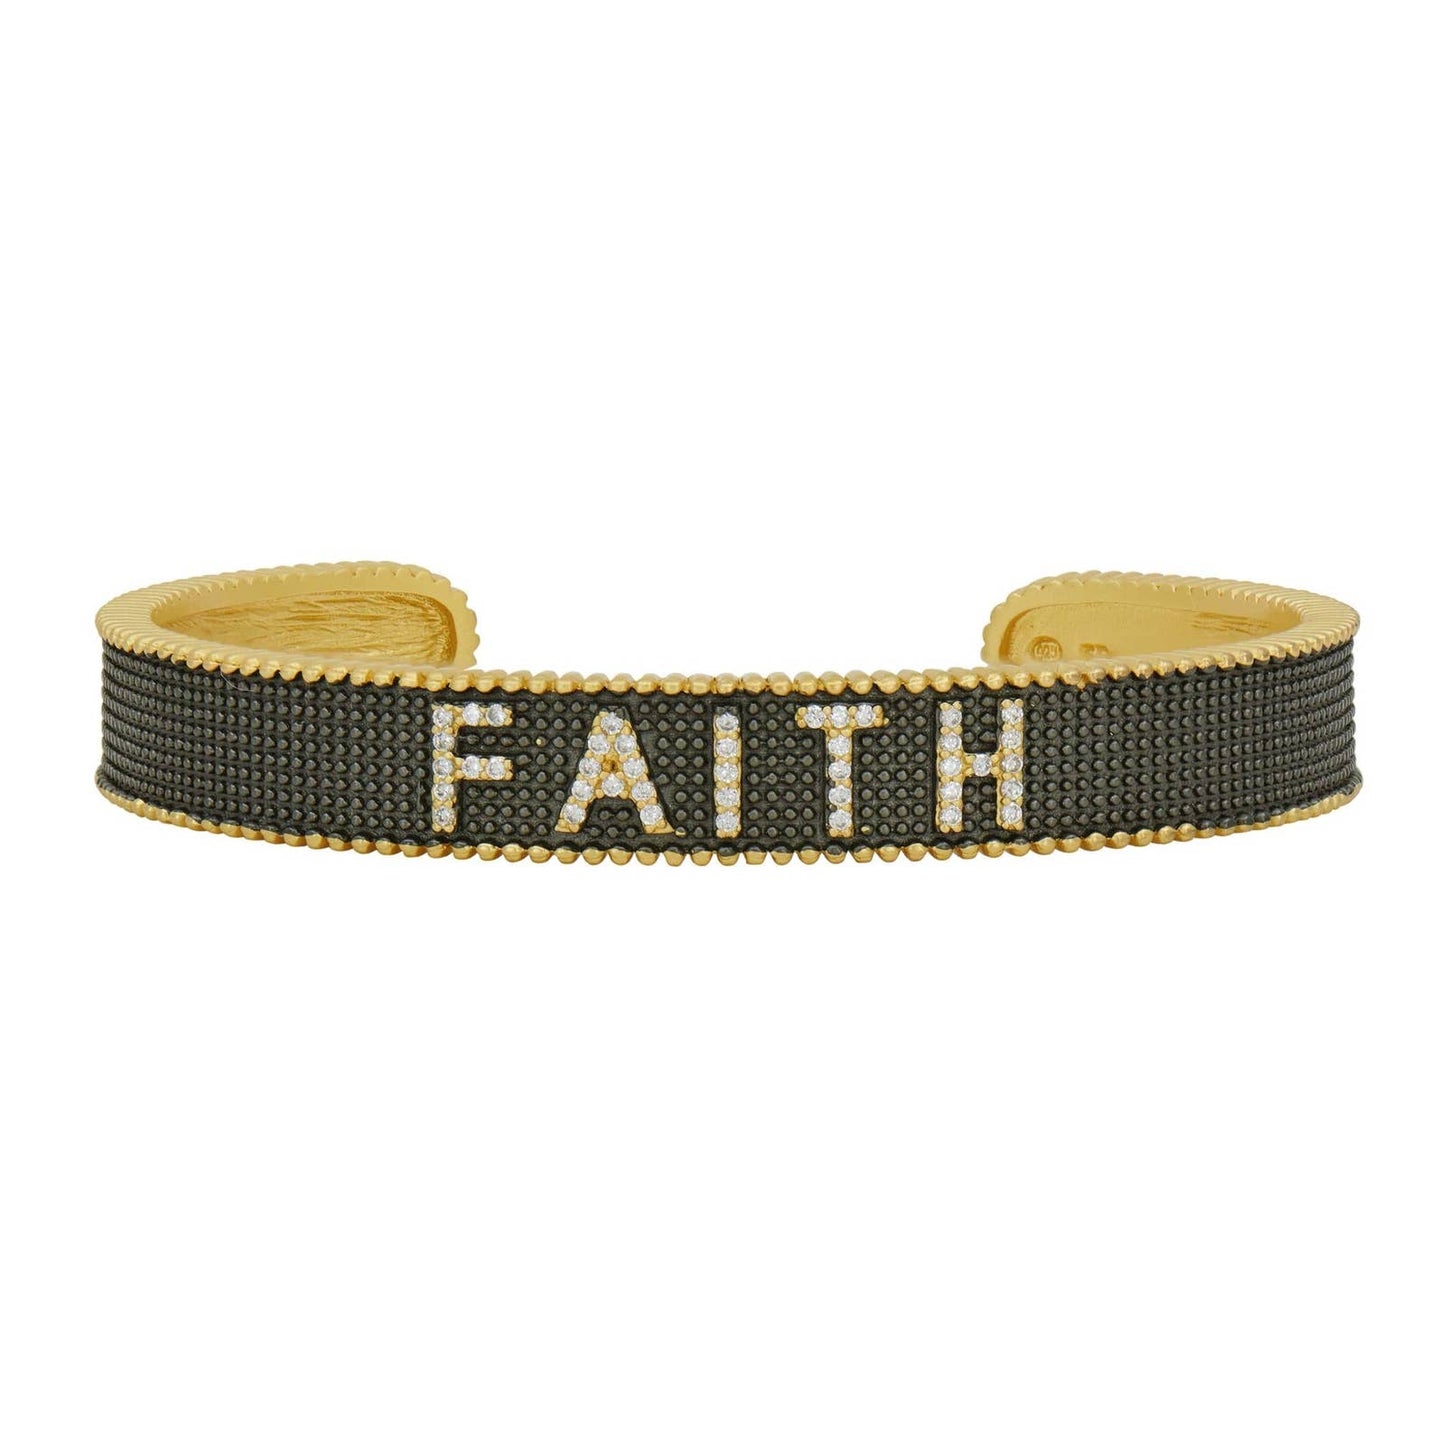 Freida Rothman Faith Cuff Bracelet